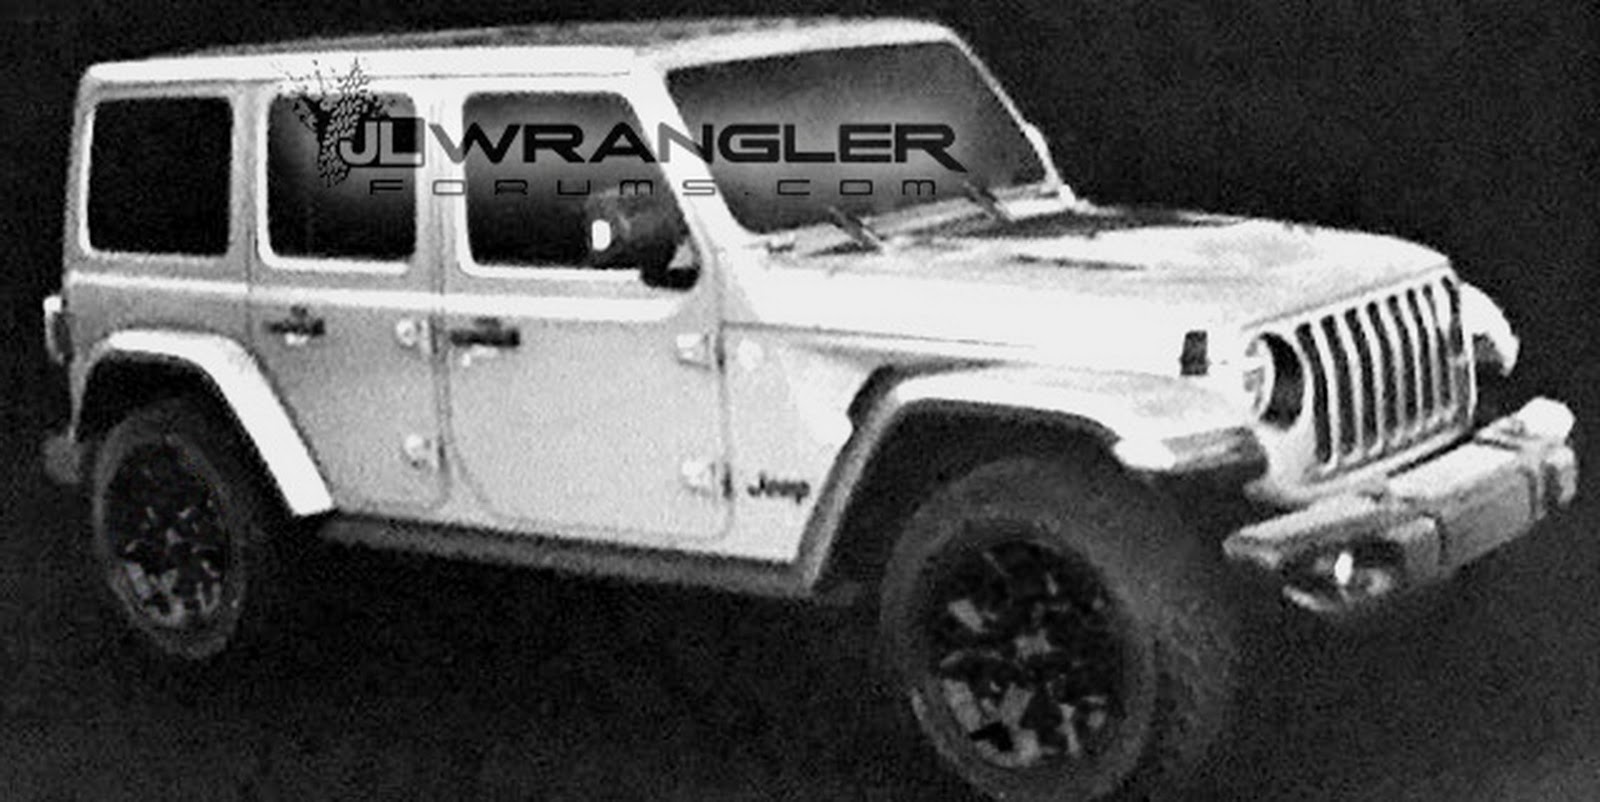 2018-wrangler-possible-leak-1.jpg